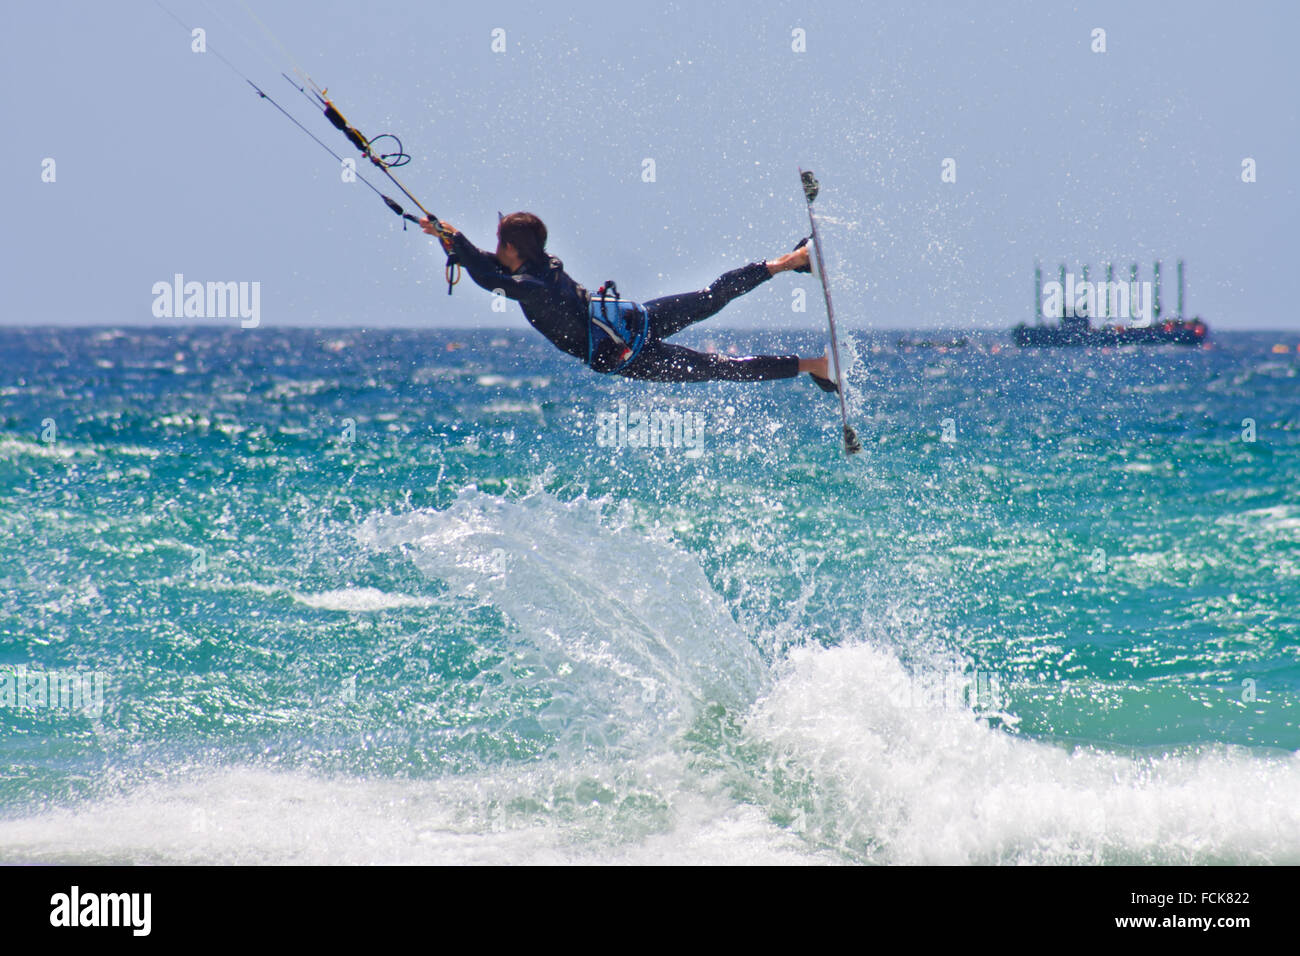 Sportif non identifiés kite surfer jumping à Tarifa, Espagne Banque D'Images